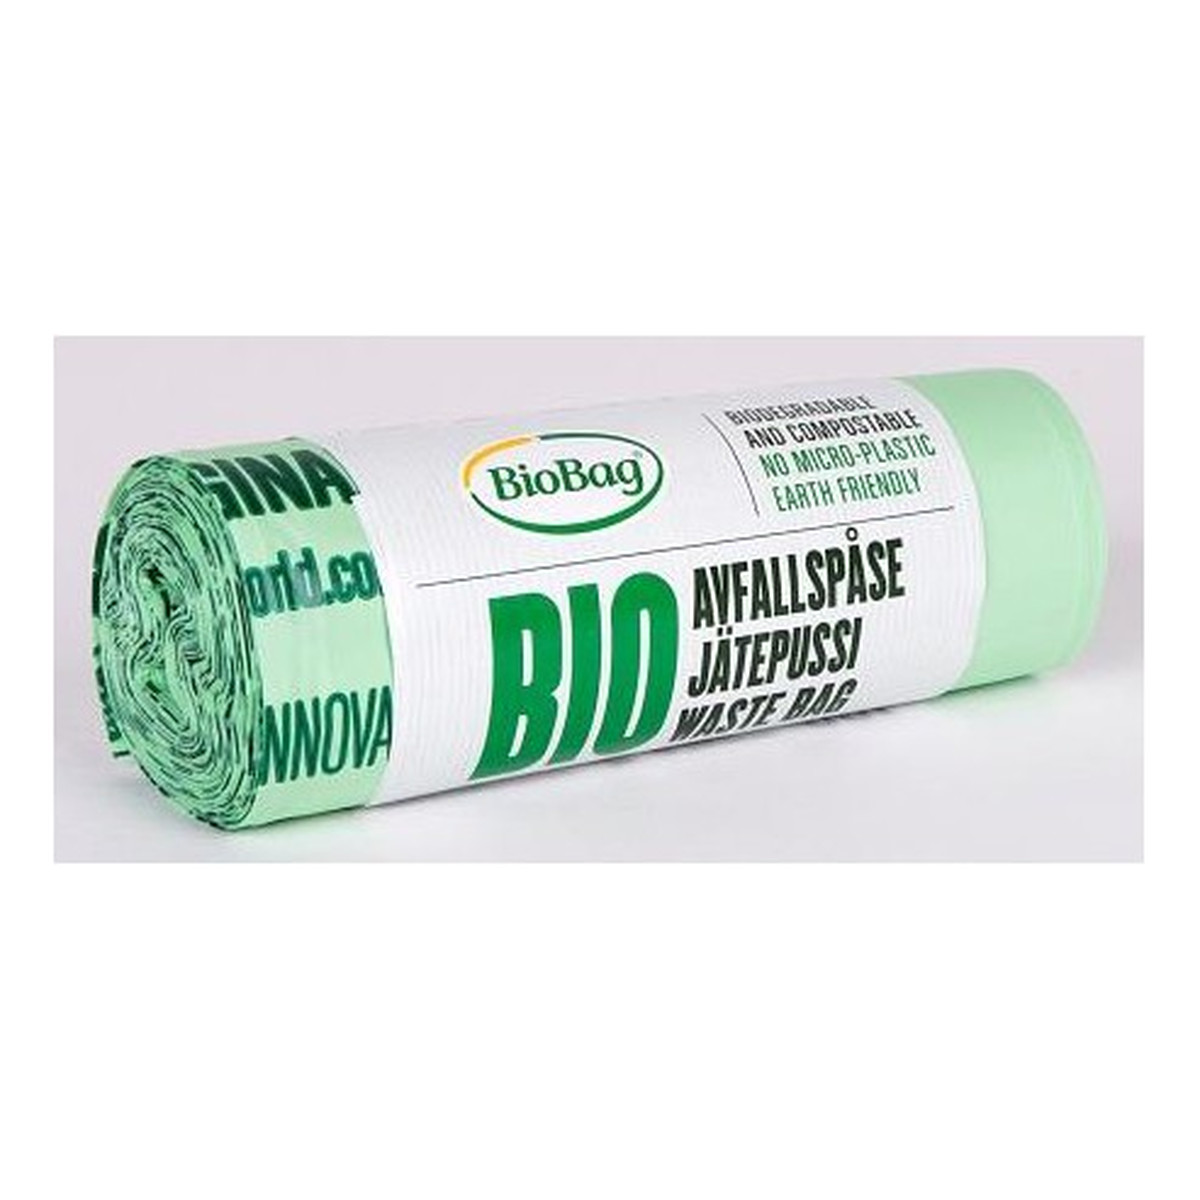 BioBag Worki na odpady organiczne i zmieszane, 100% biodegradowalne i kompostowalne 30L 20szt. 600g